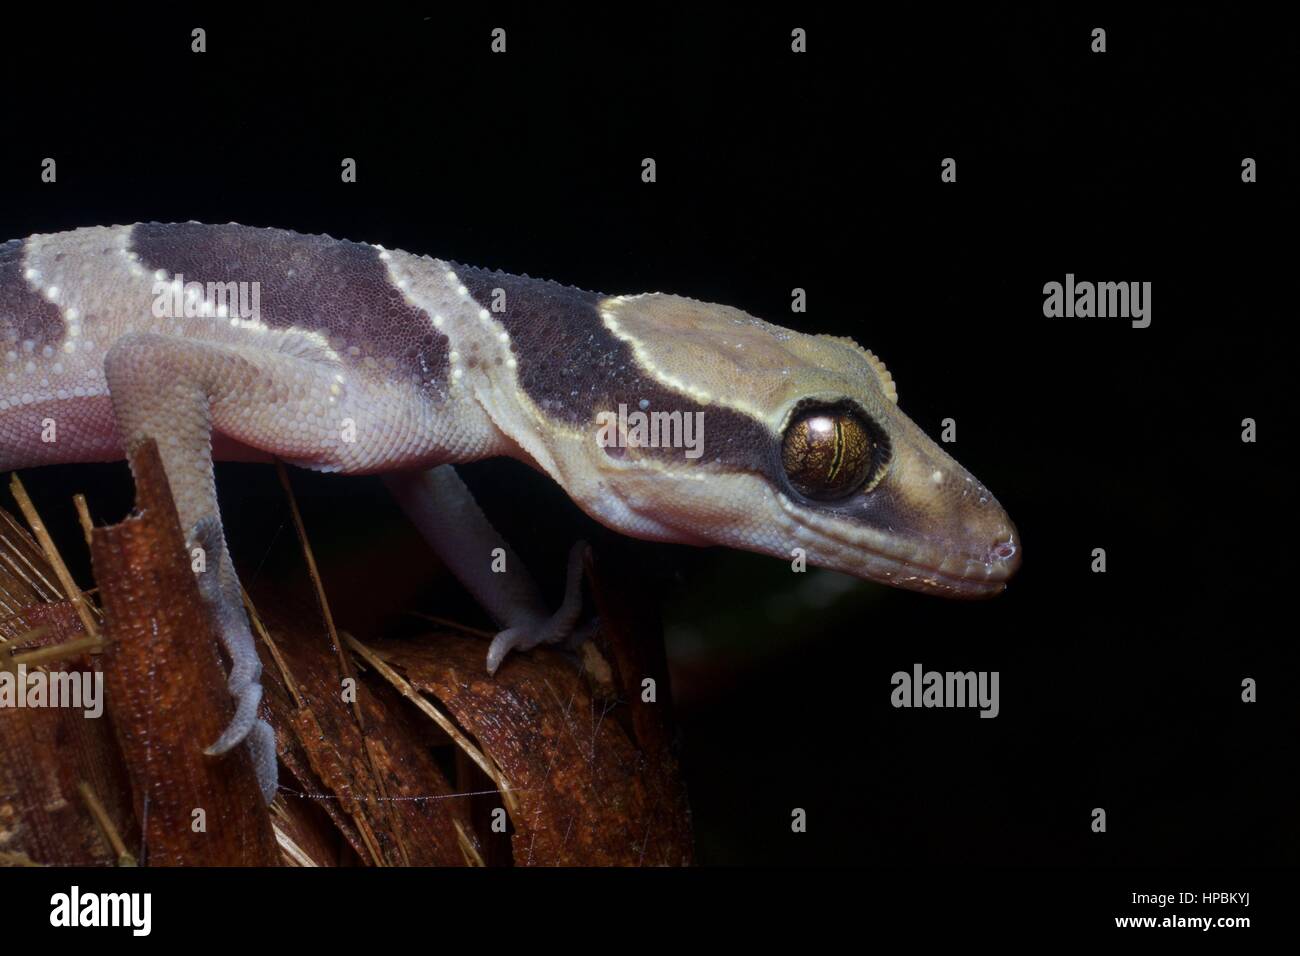 A Southern Titiwangsa Bent-toed Gecko (Cyrtodactylus australotitiwangsaensis) dans la forêt pluviale la nuit dans Fraser's Hill, Pahang, Malaisie Banque D'Images